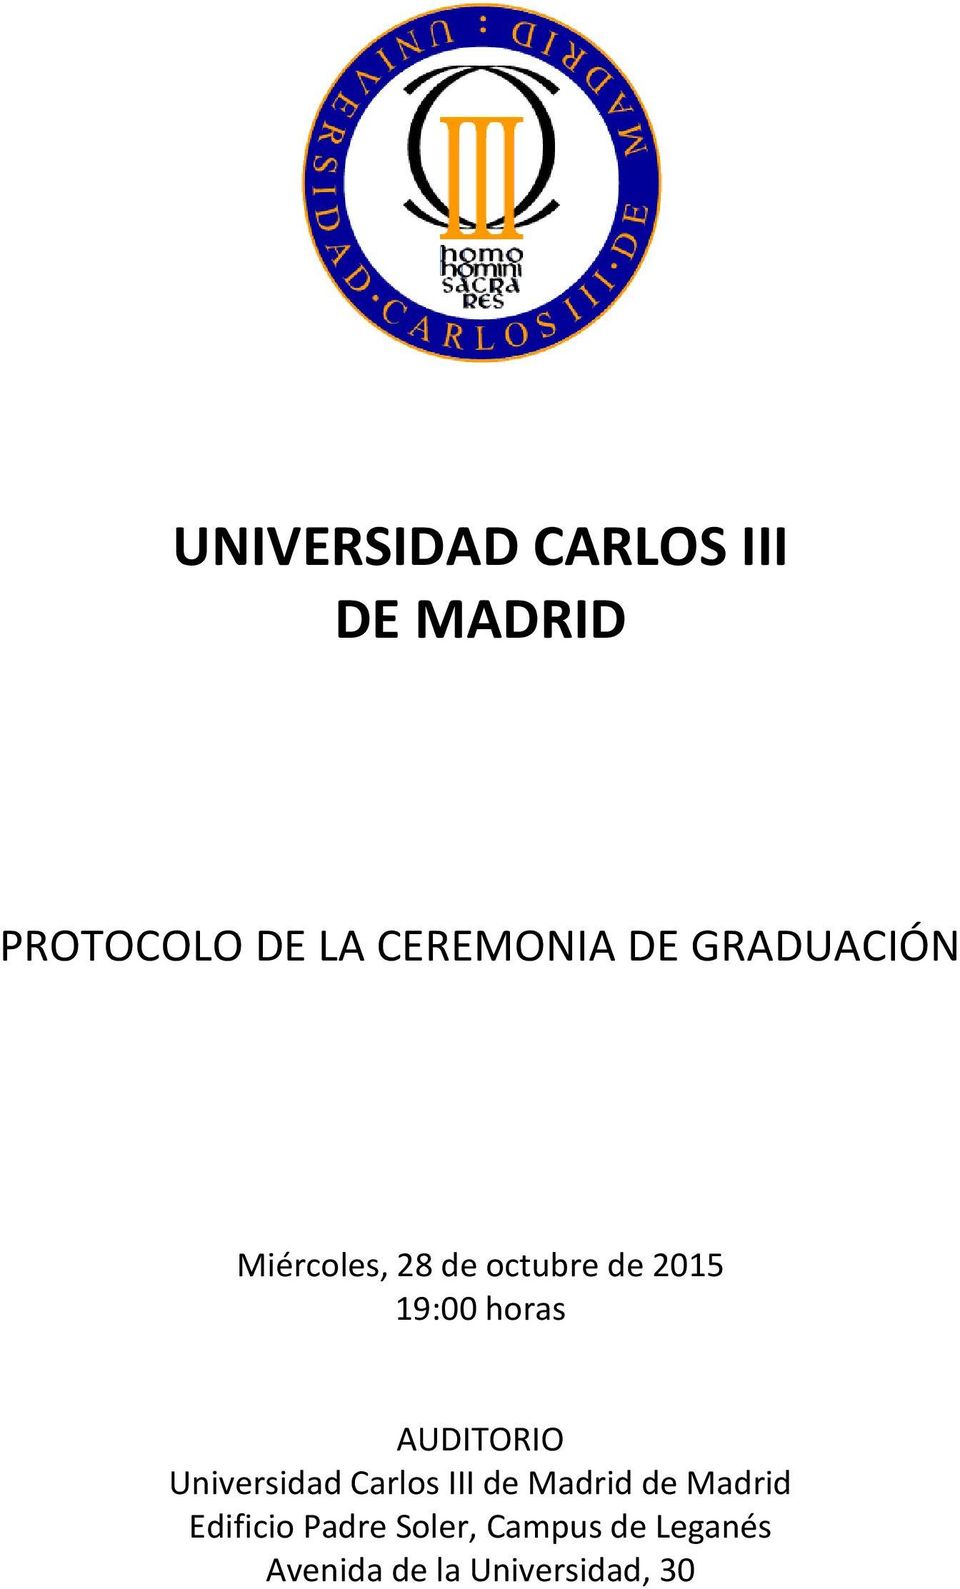 AUDITORIO Universidad Carlos III de Madrid de Madrid